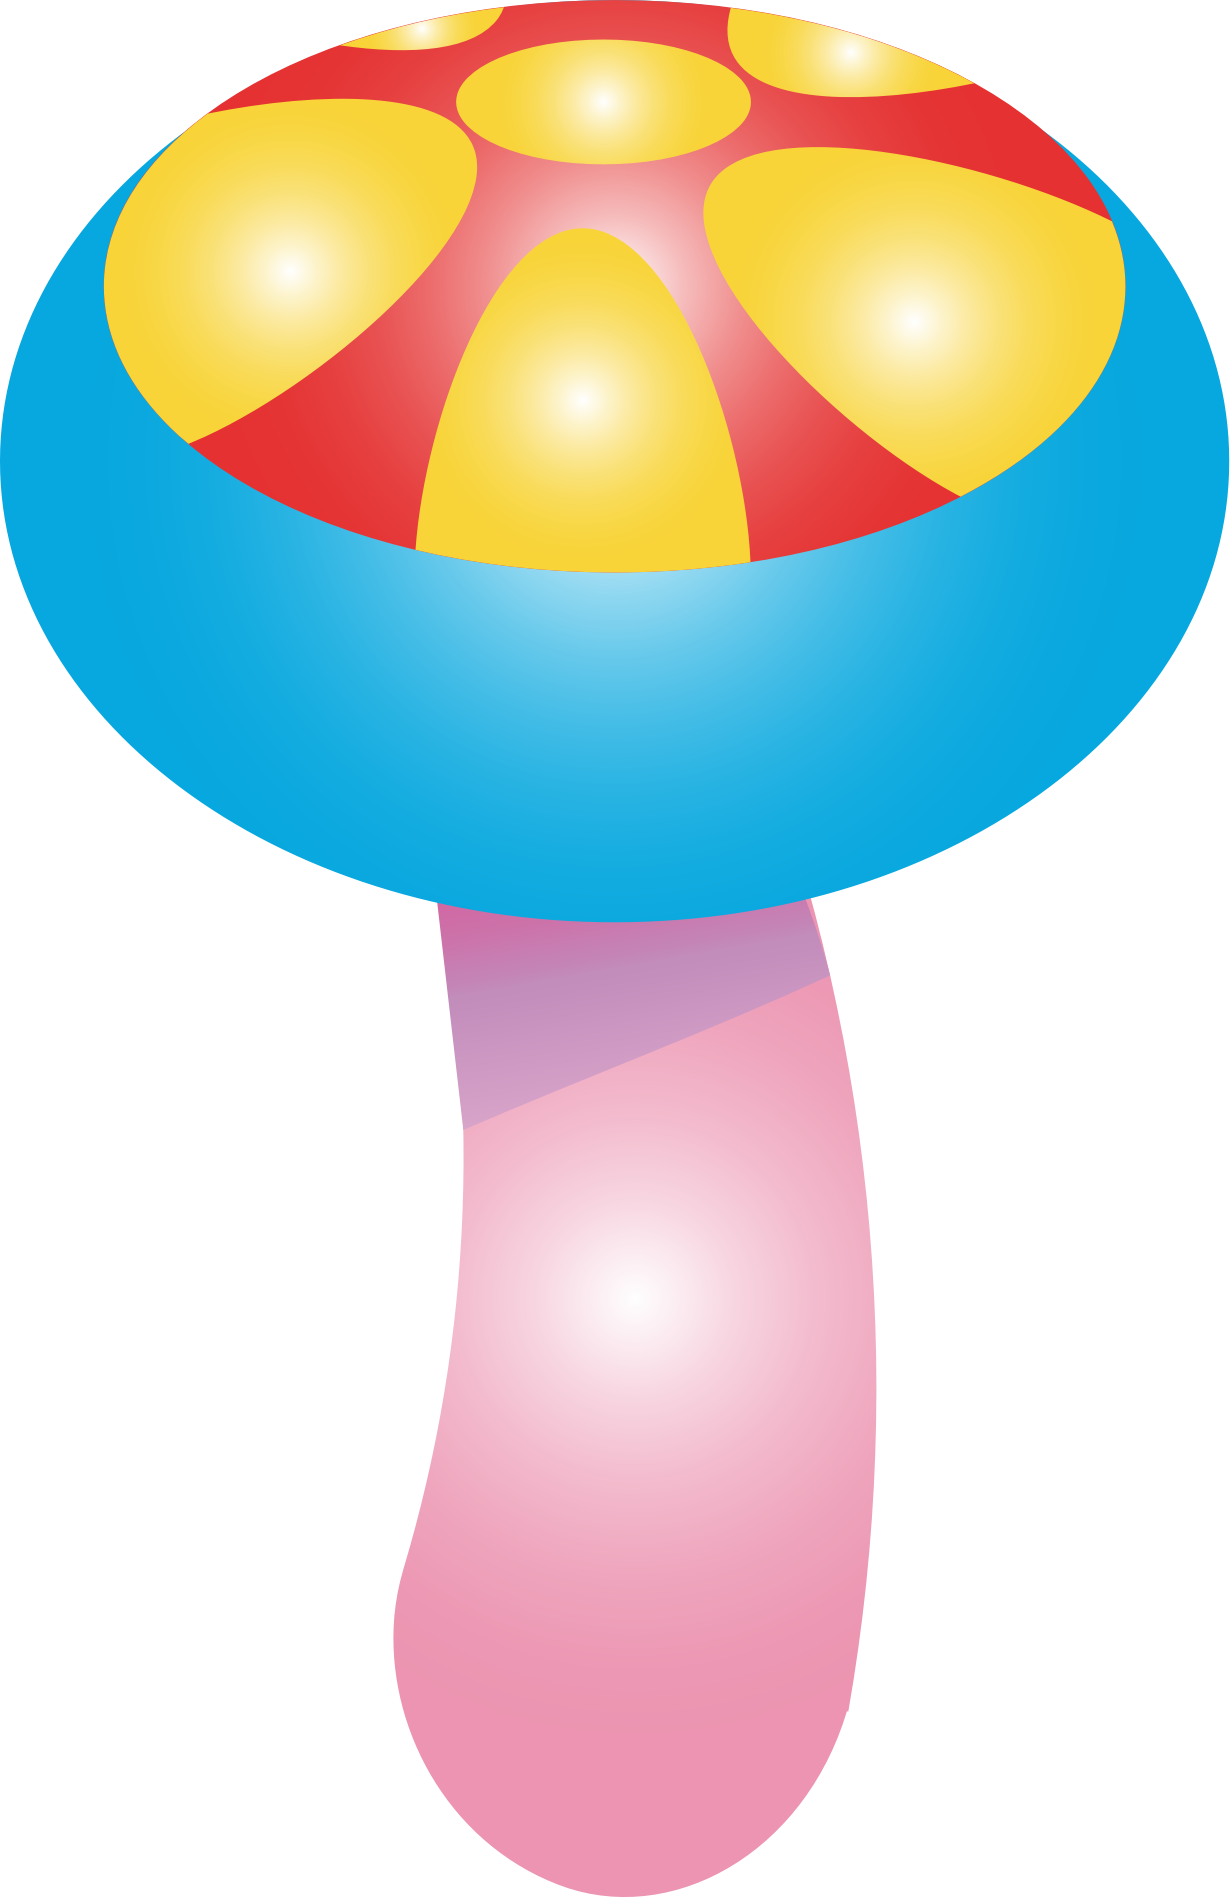 Mushroom colorful mushroom